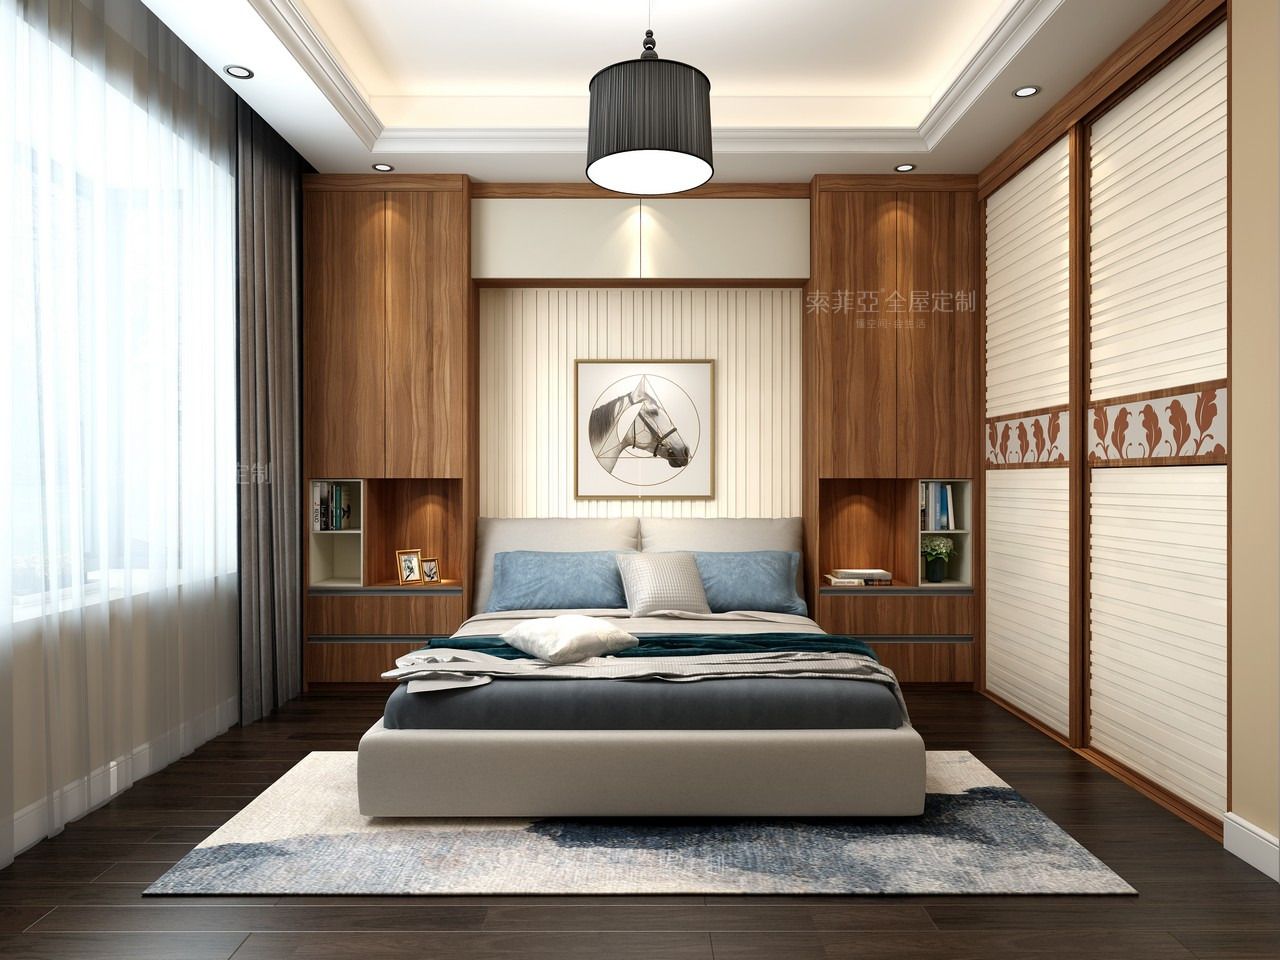 尤其是卧室床头的高柜,可以在靠近床的位置增加一些开放式收纳设计.